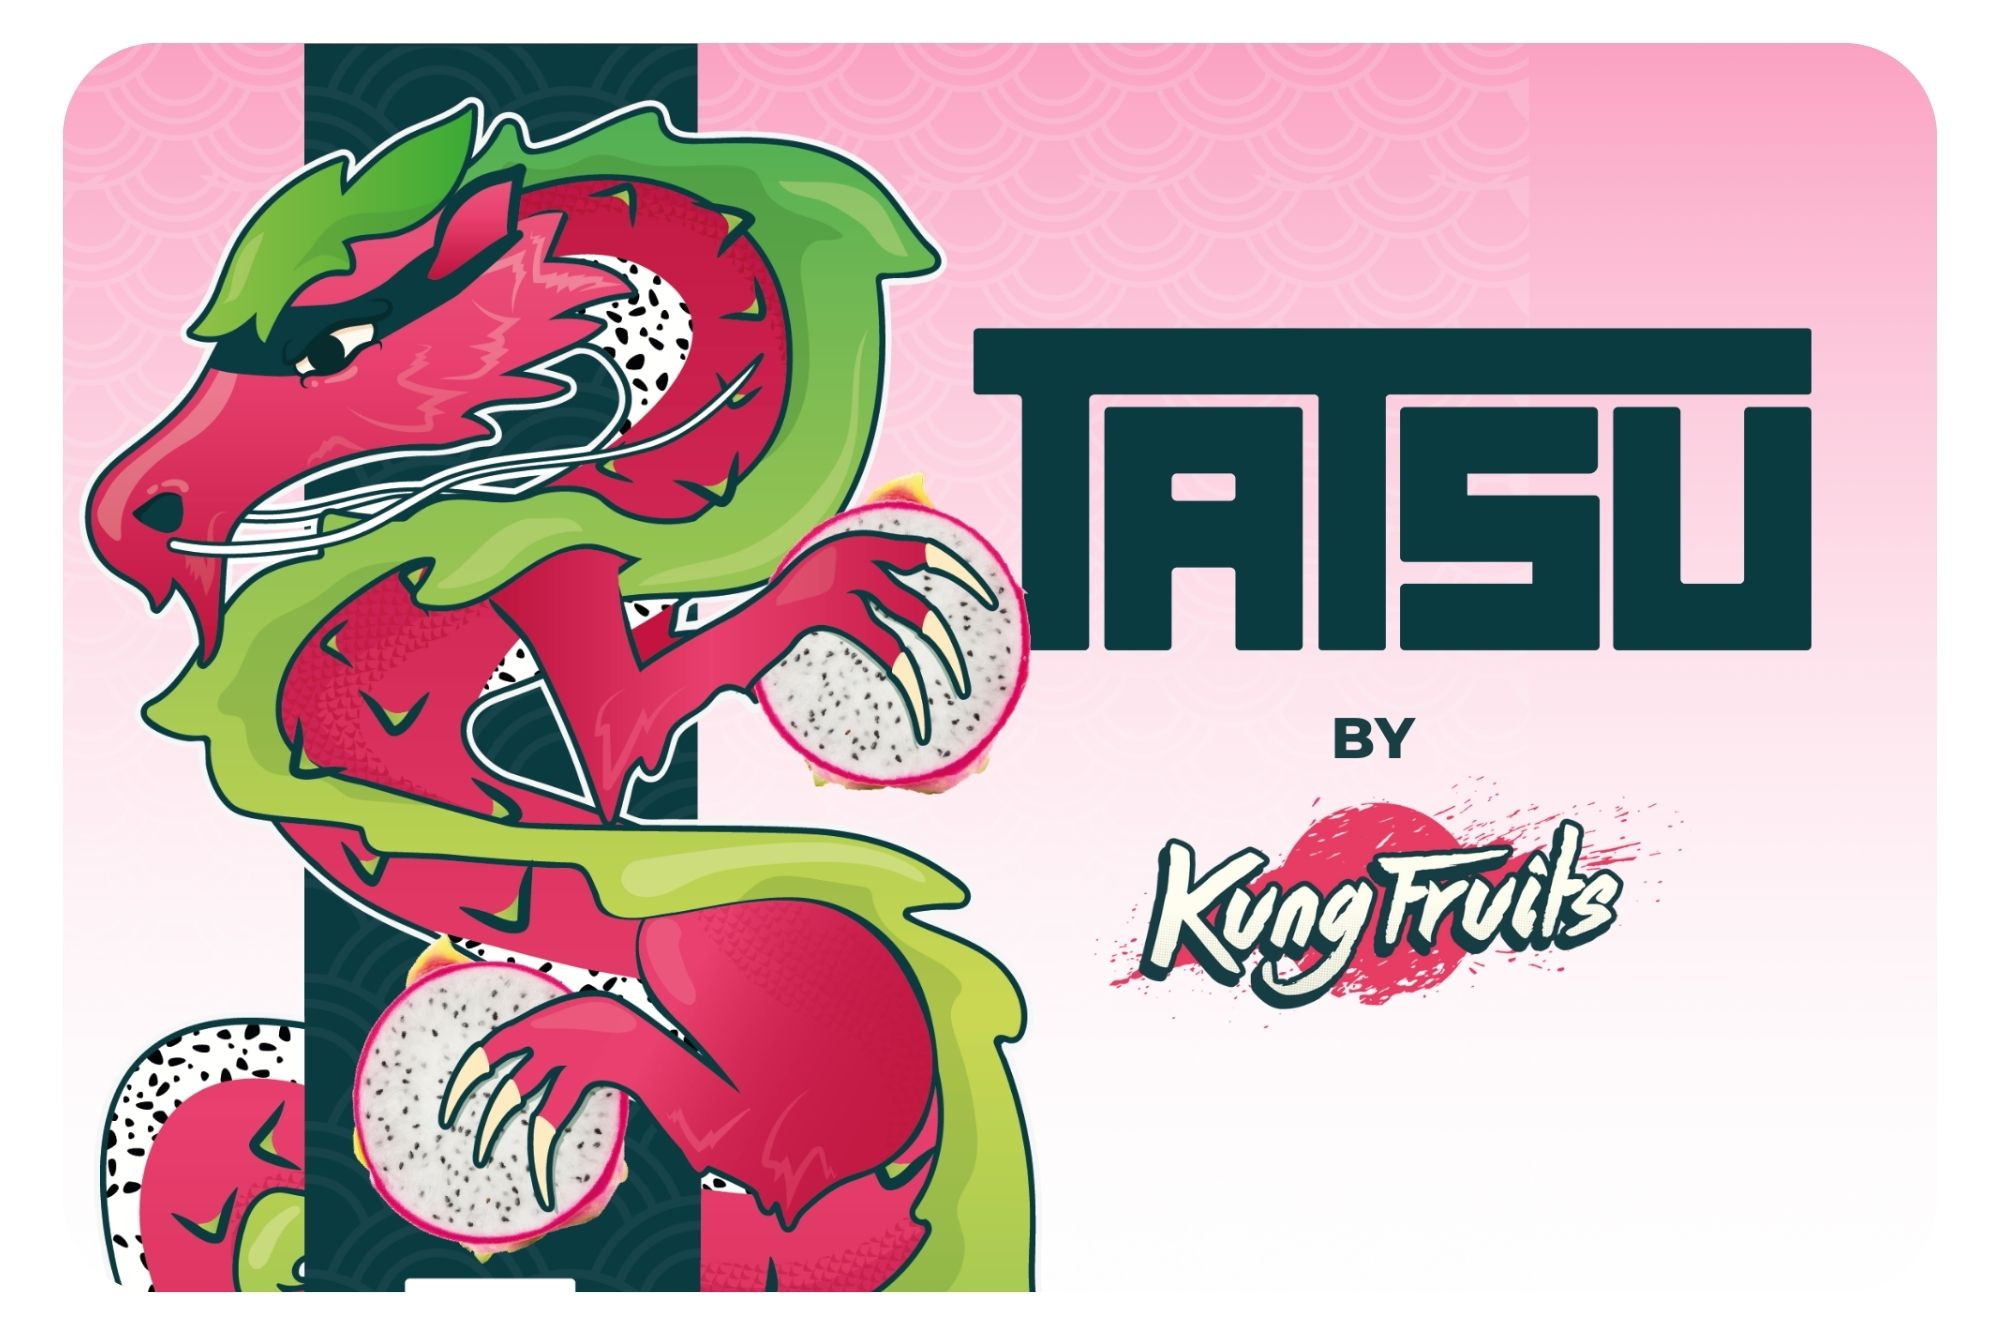 TASTU BY KUNG FRUITS